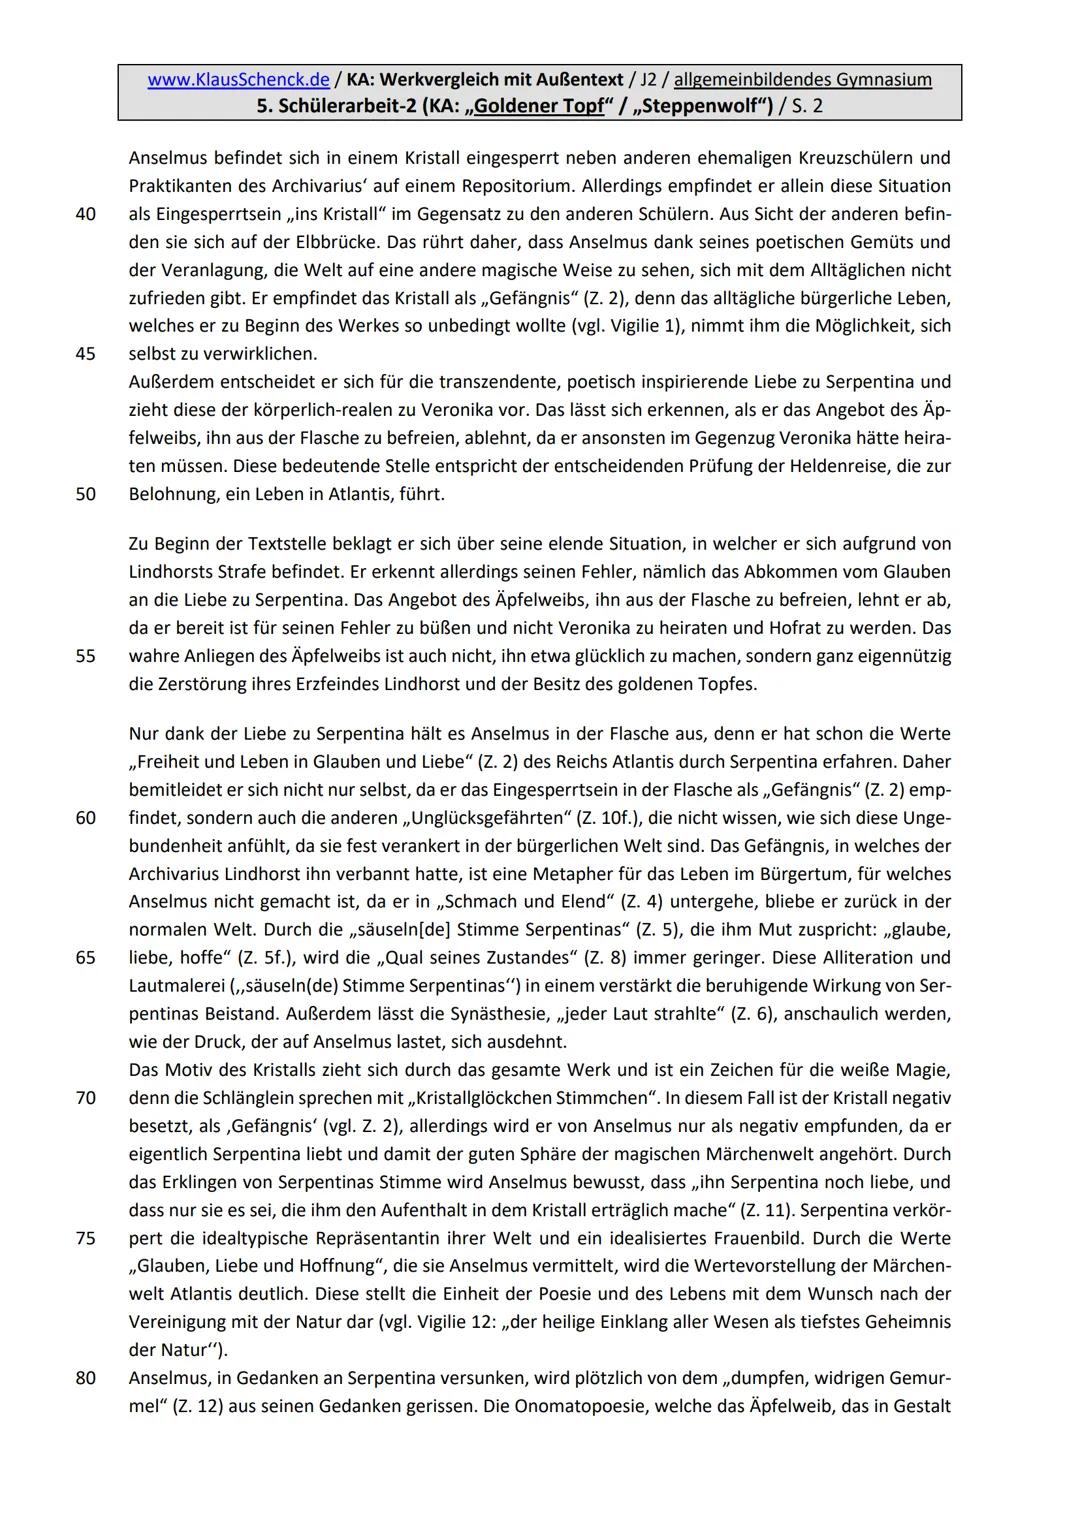 www.KlausSchenck.de/KA: Werkvergleich mit Außentext/J2 / allgemeinbildendes Gymnasium
1. Erläuterung der Aufgabenstellung / Gesamtüberblick: